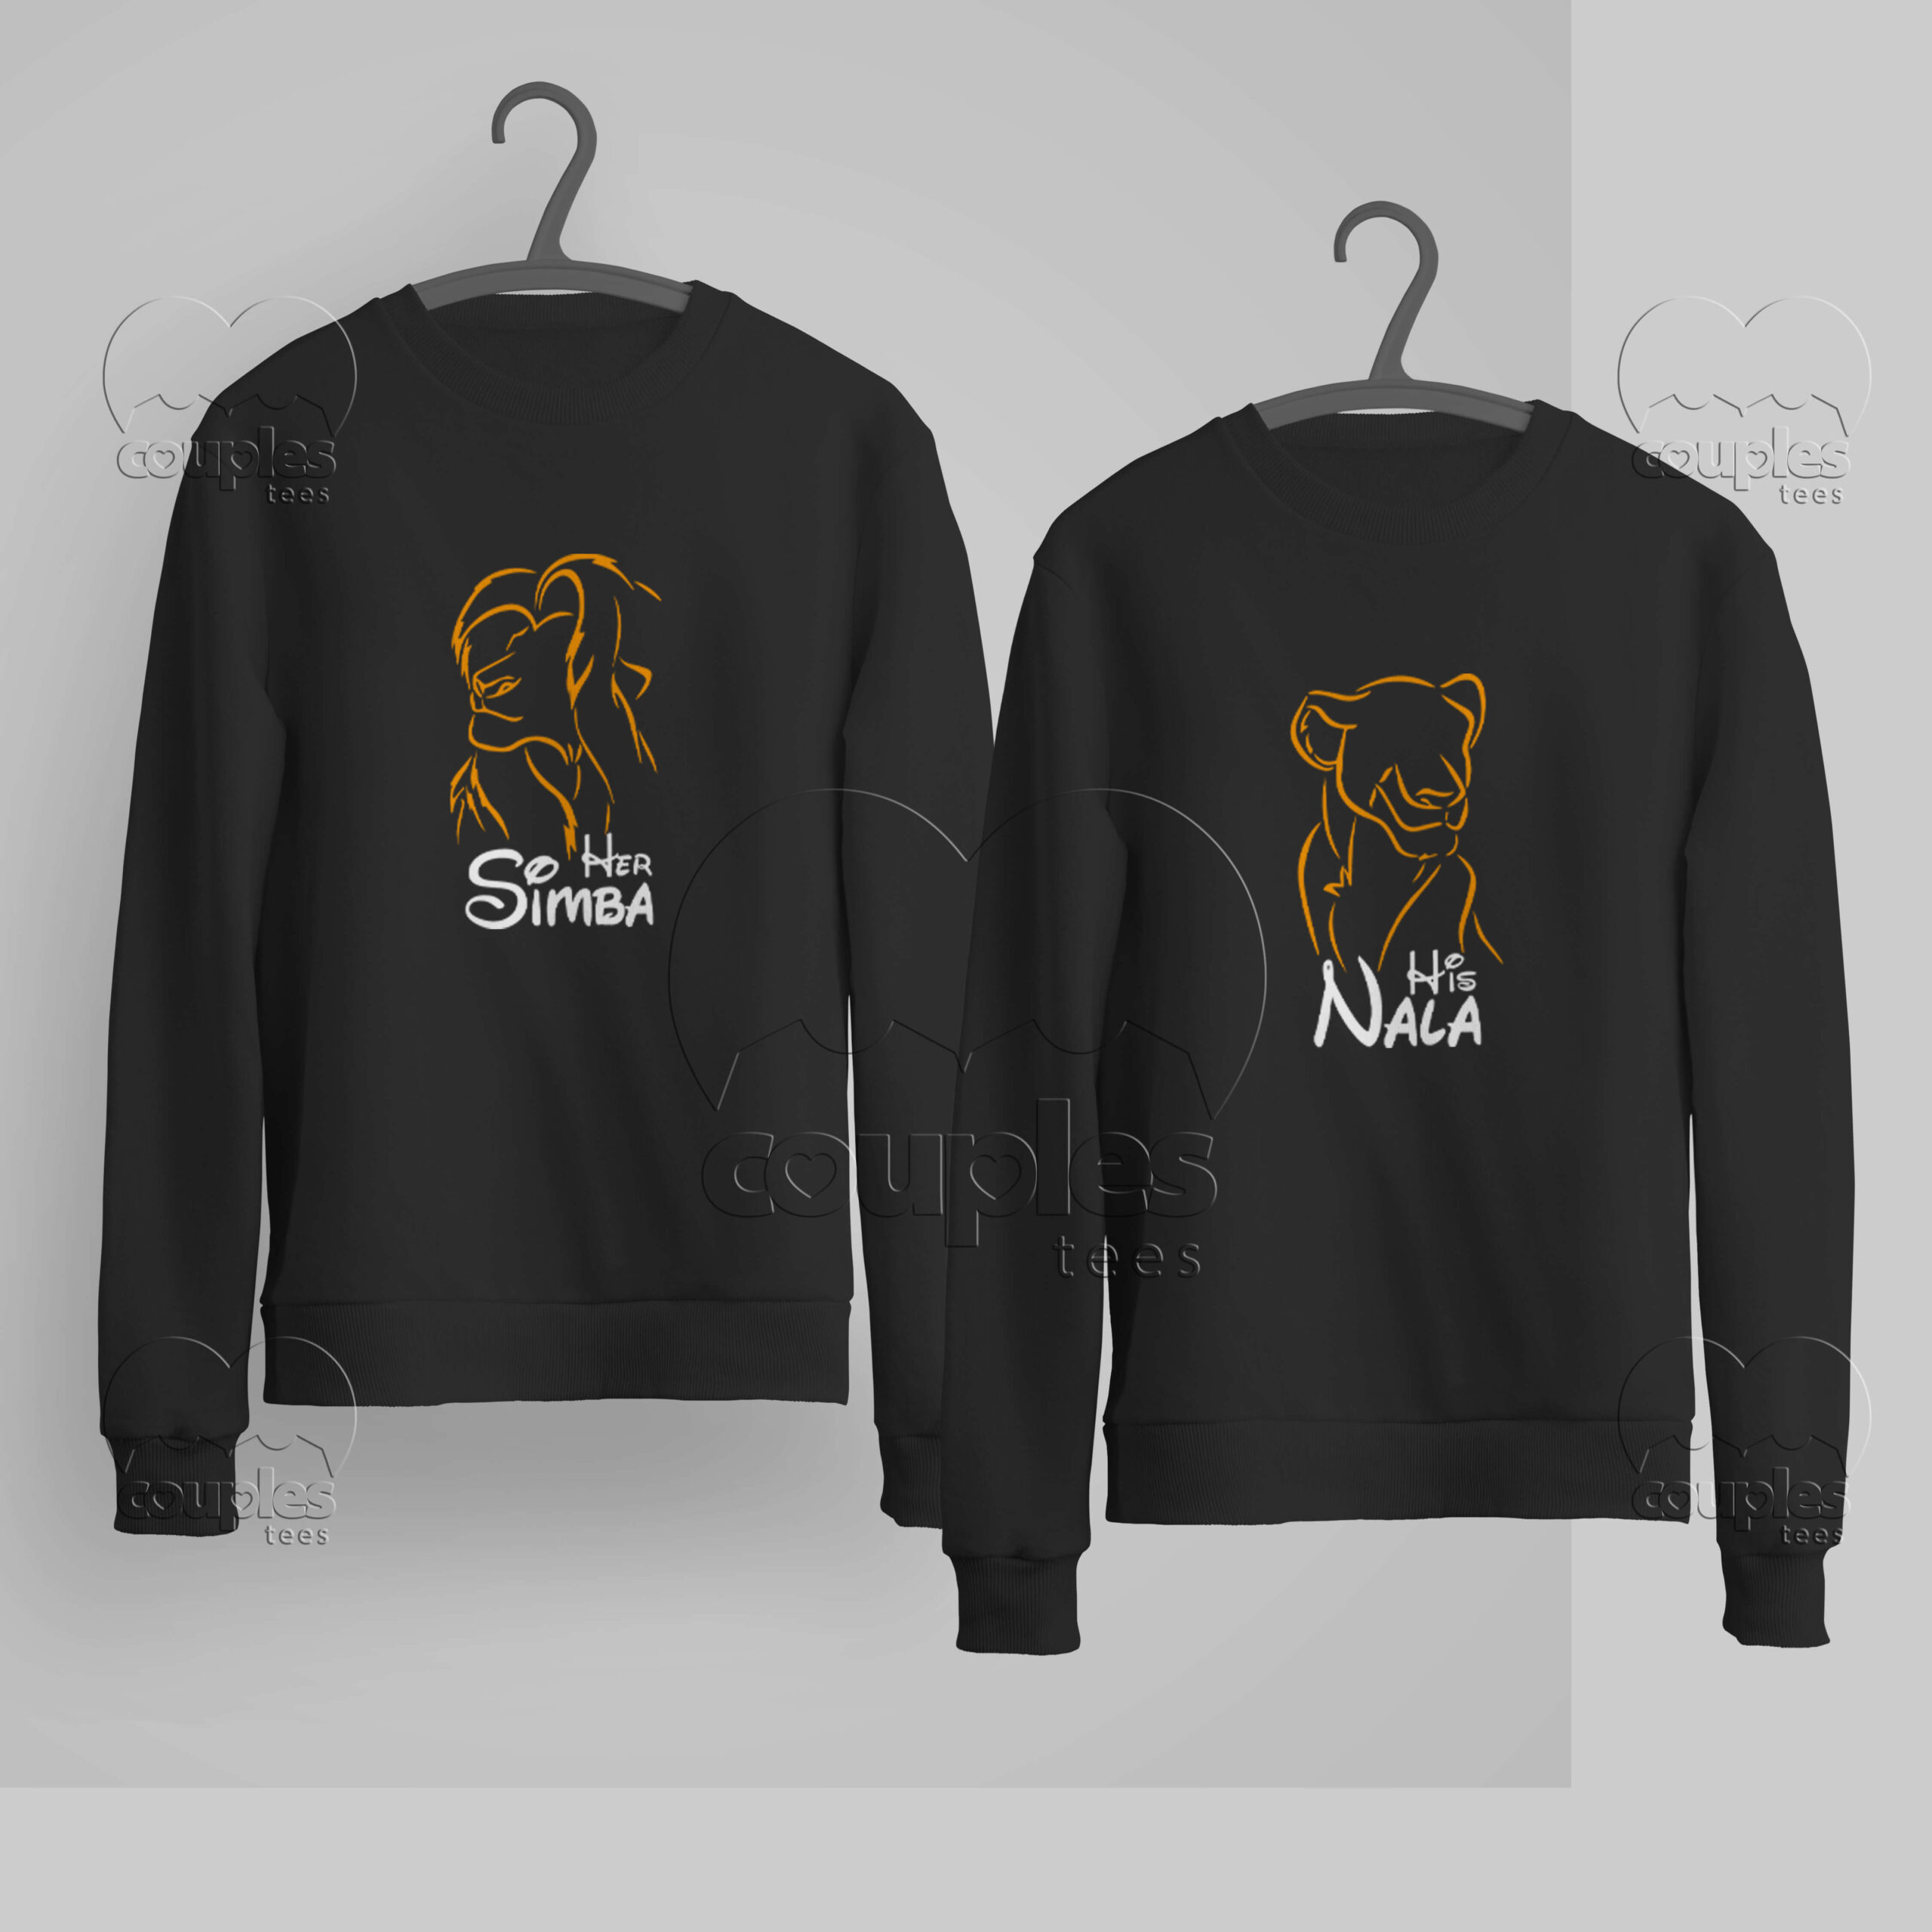 Simba and Nala Couples Matching Sweaters